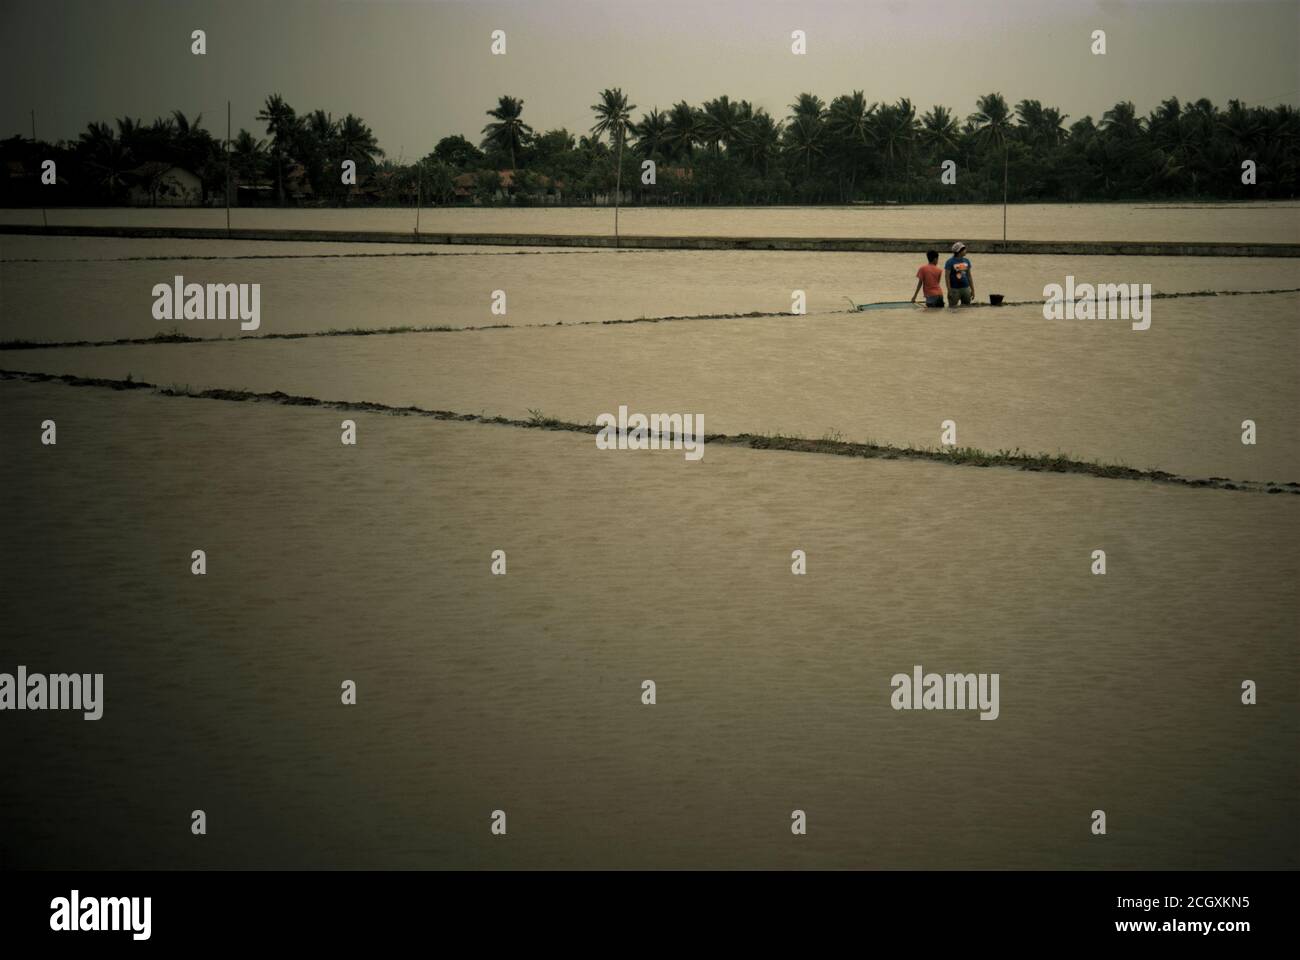 Les jeunes qui se tiennent sur un champ de riz inondé pour pêcher avec un pushnet, car les pluies torrentielles pendant la saison des pluies ont laissé des champs agricoles inondés dans le Karawang regency, province de Java Ouest, Indonésie. Banque D'Images